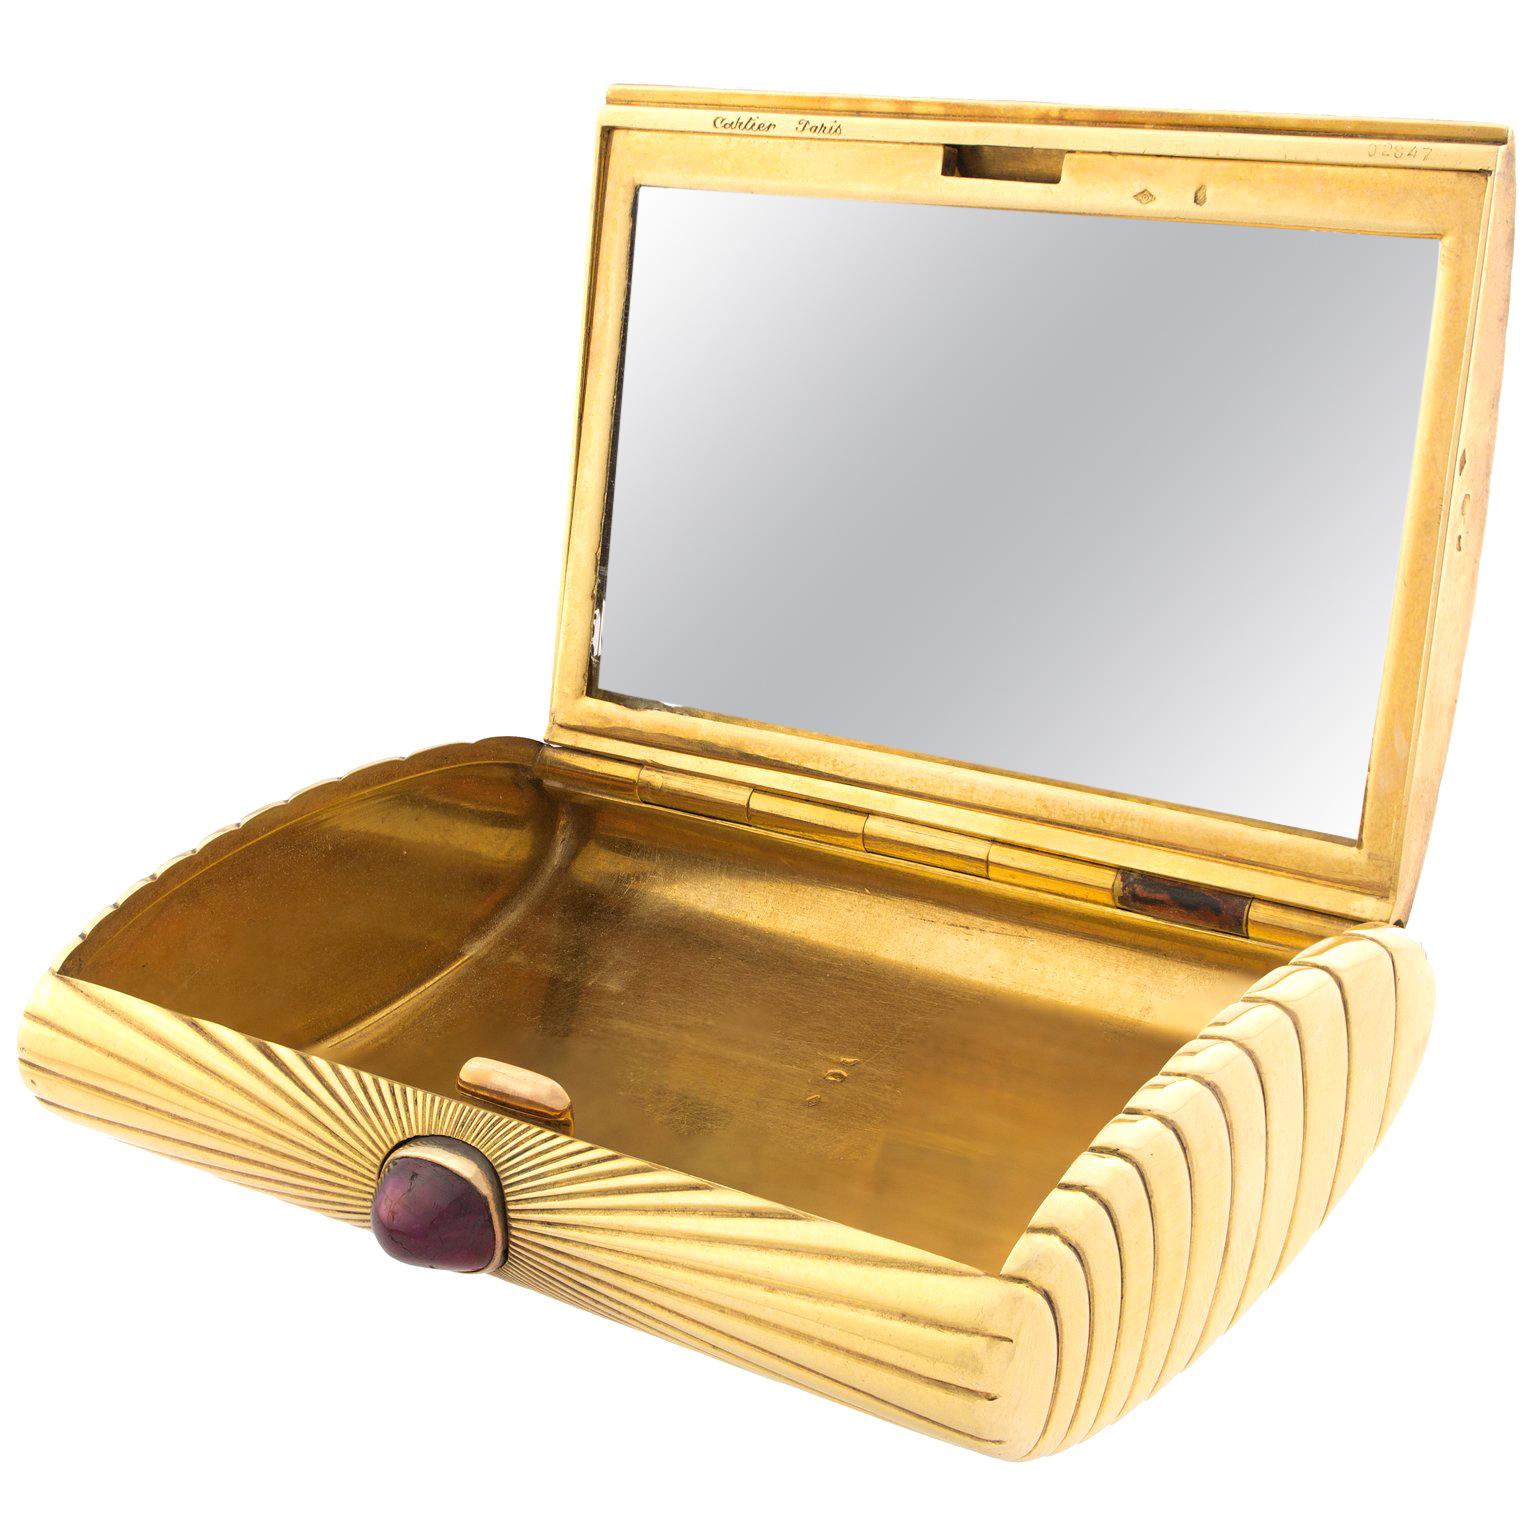 Cartier Paris Ruby 18 Karat Gold Box For Sale